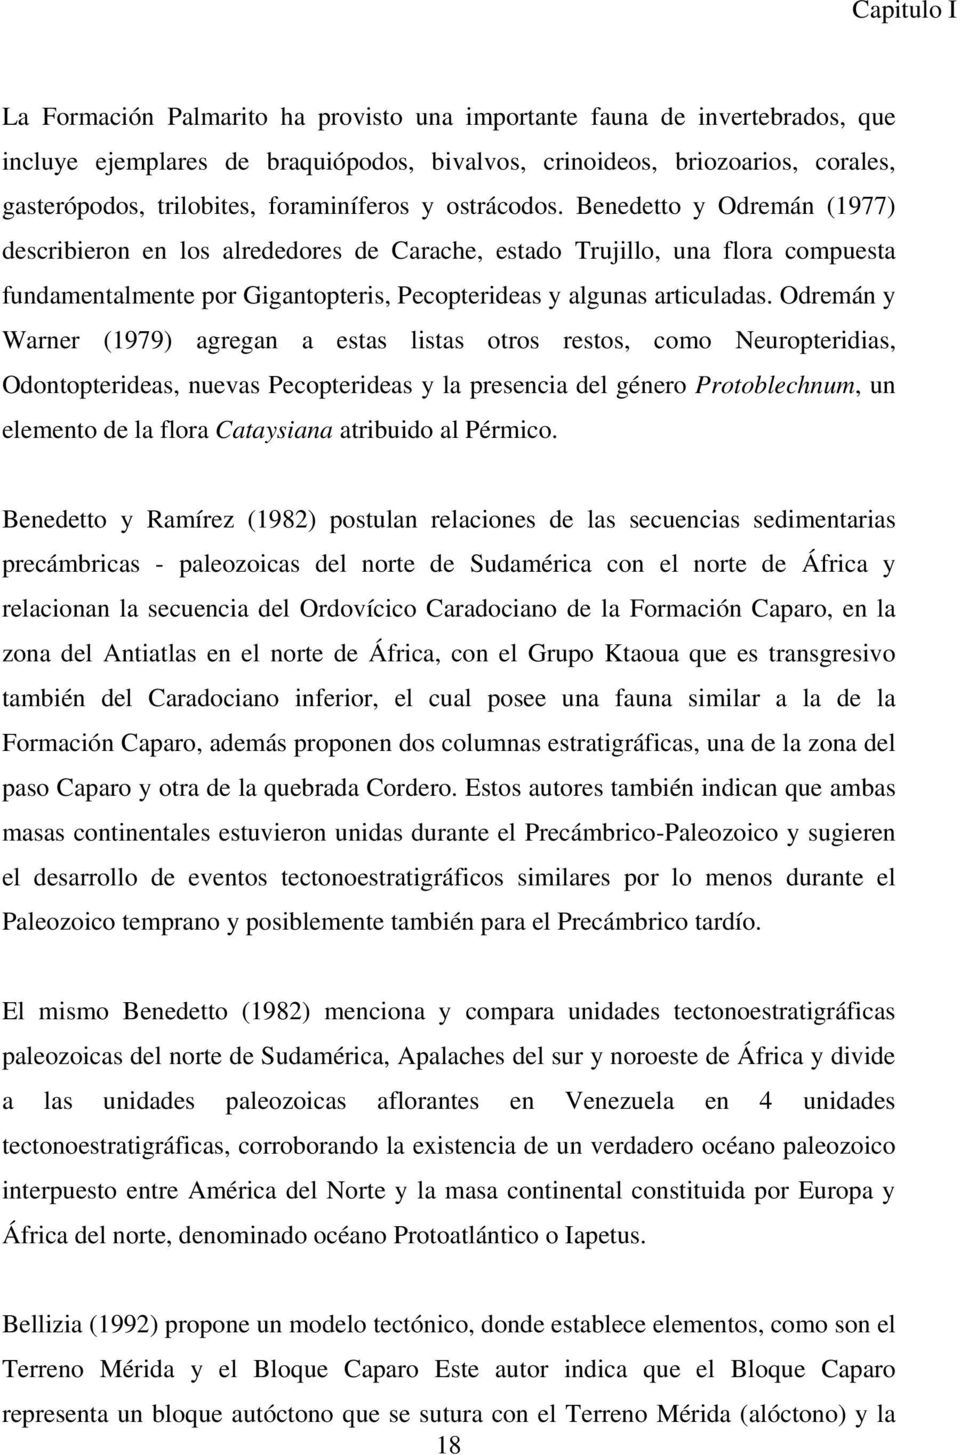 Benedetto y Odremán (1977) describieron en los alrededores de Carache, estado Trujillo, una flora compuesta fundamentalmente por Gigantopteris, Pecopterideas y algunas articuladas.